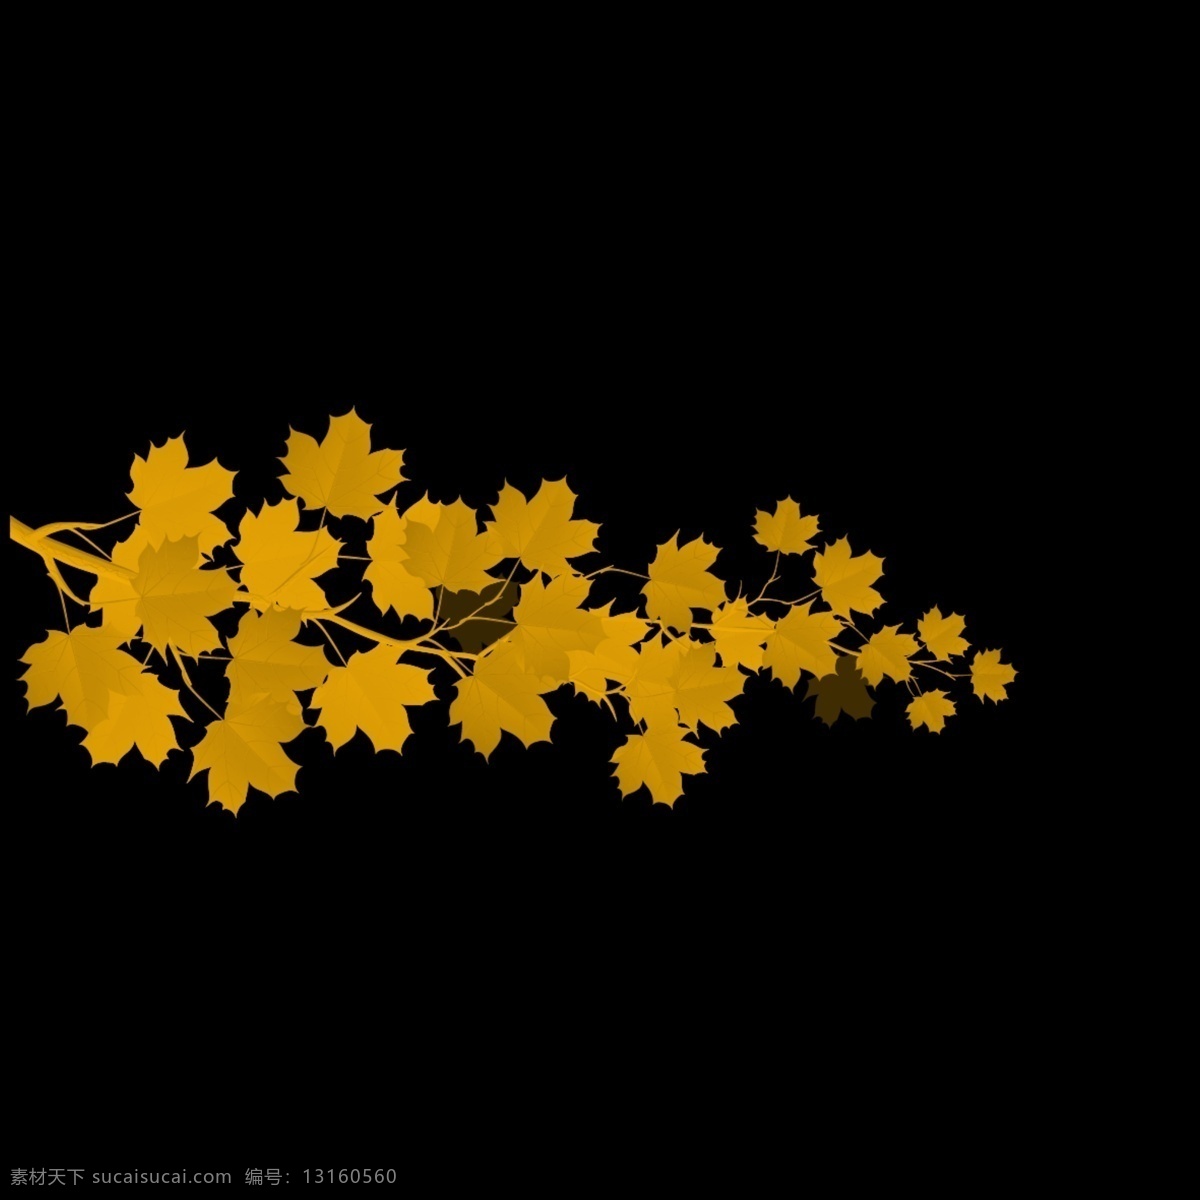 秋天的叶子 枫叶 黄色的叶子 漂亮 秋天 黑色